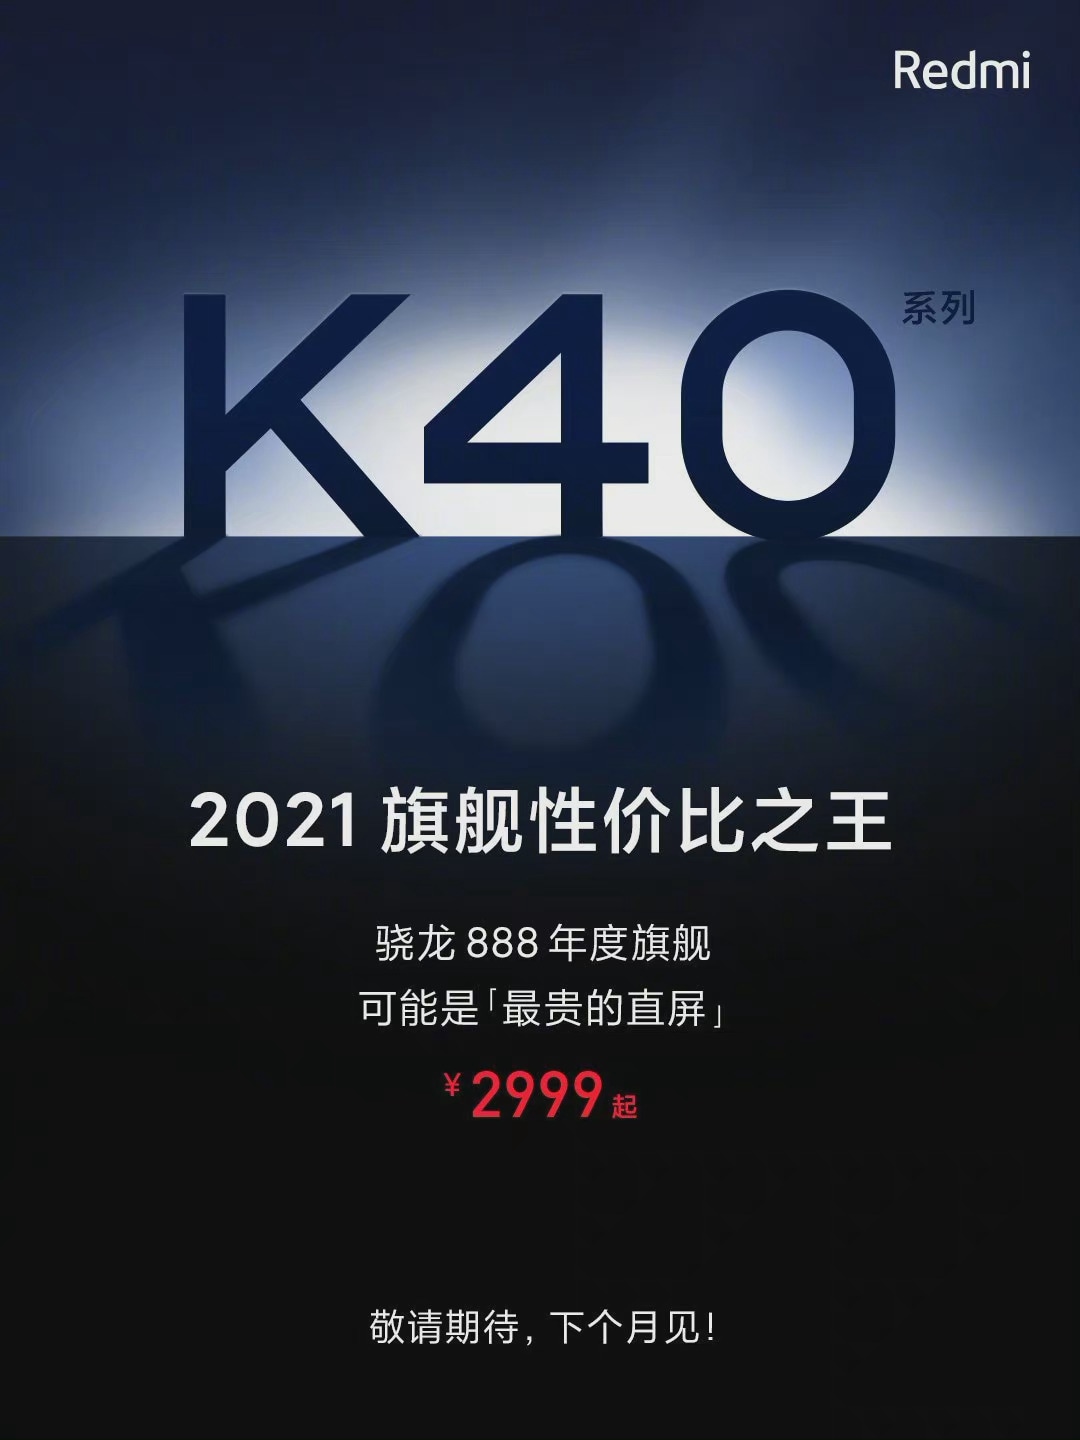 La serie Redmi K40 sarà competitiva su tutti i fronti: in arrivo anche accessori gaming (foto)